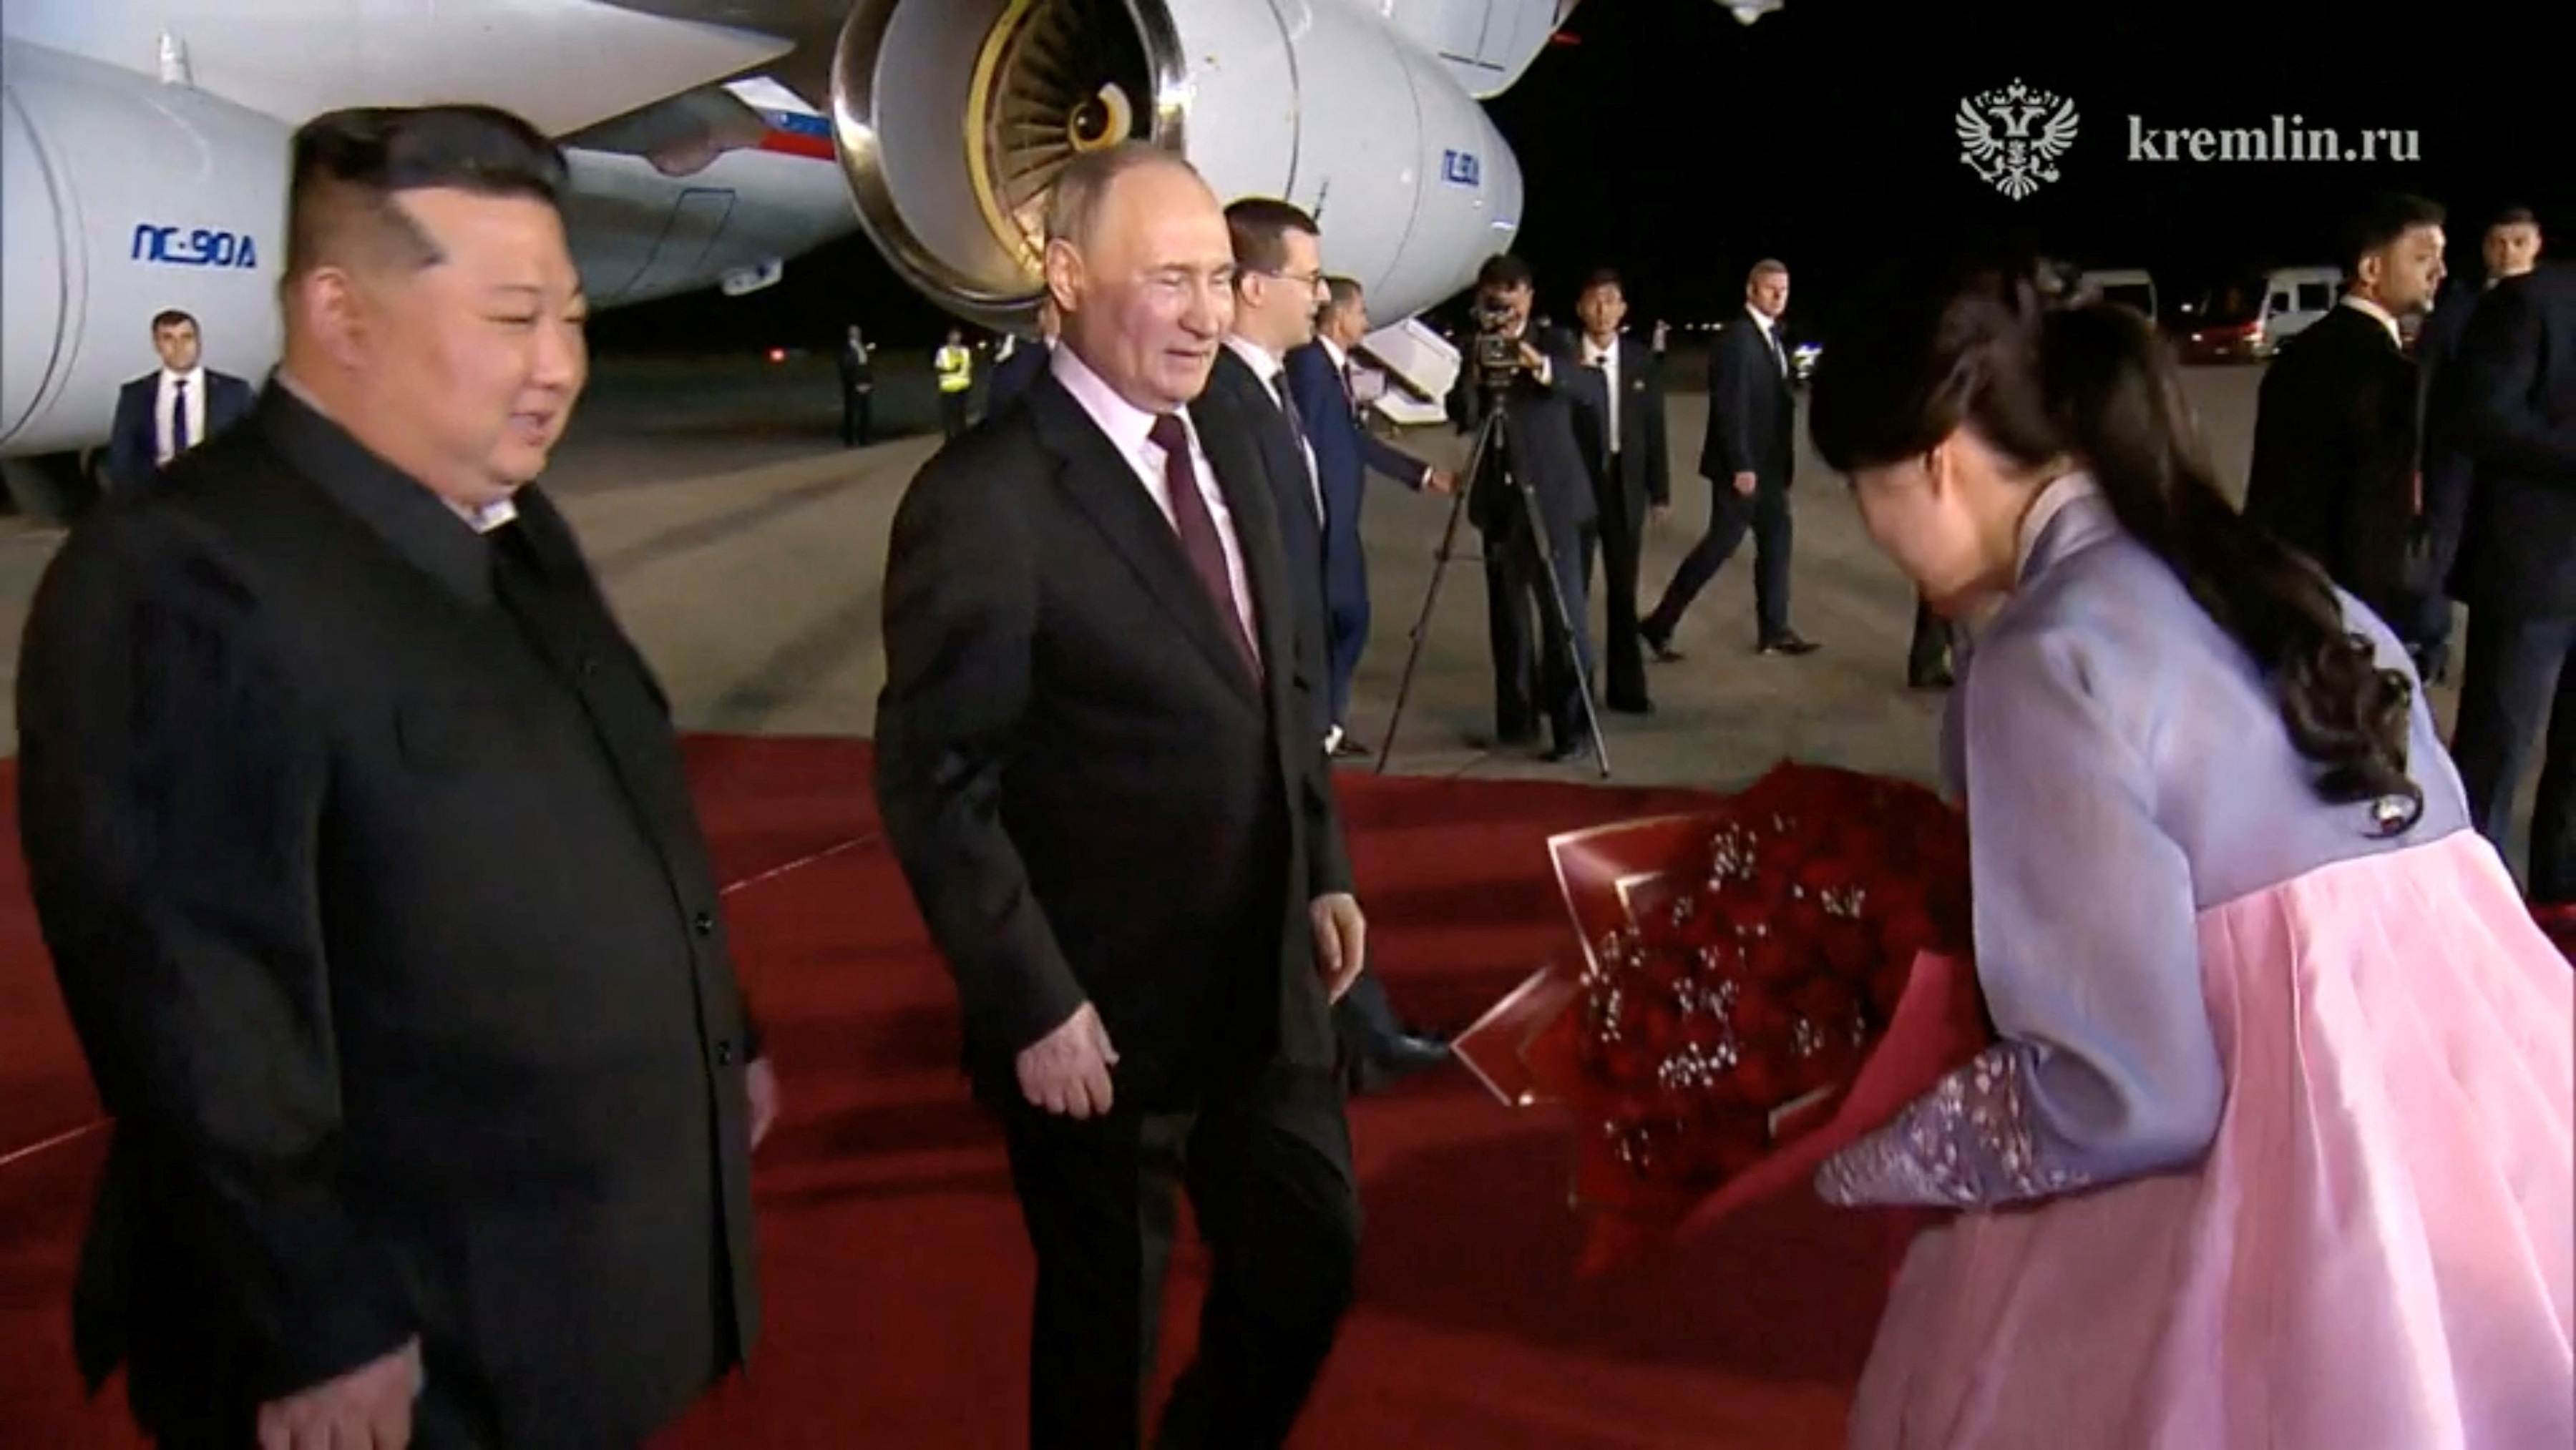 Nhà lãnh đạo Triều Tiên Kim Jong-un tới sân bay chào đón Tổng thống Putin (Ảnh: Reuters).